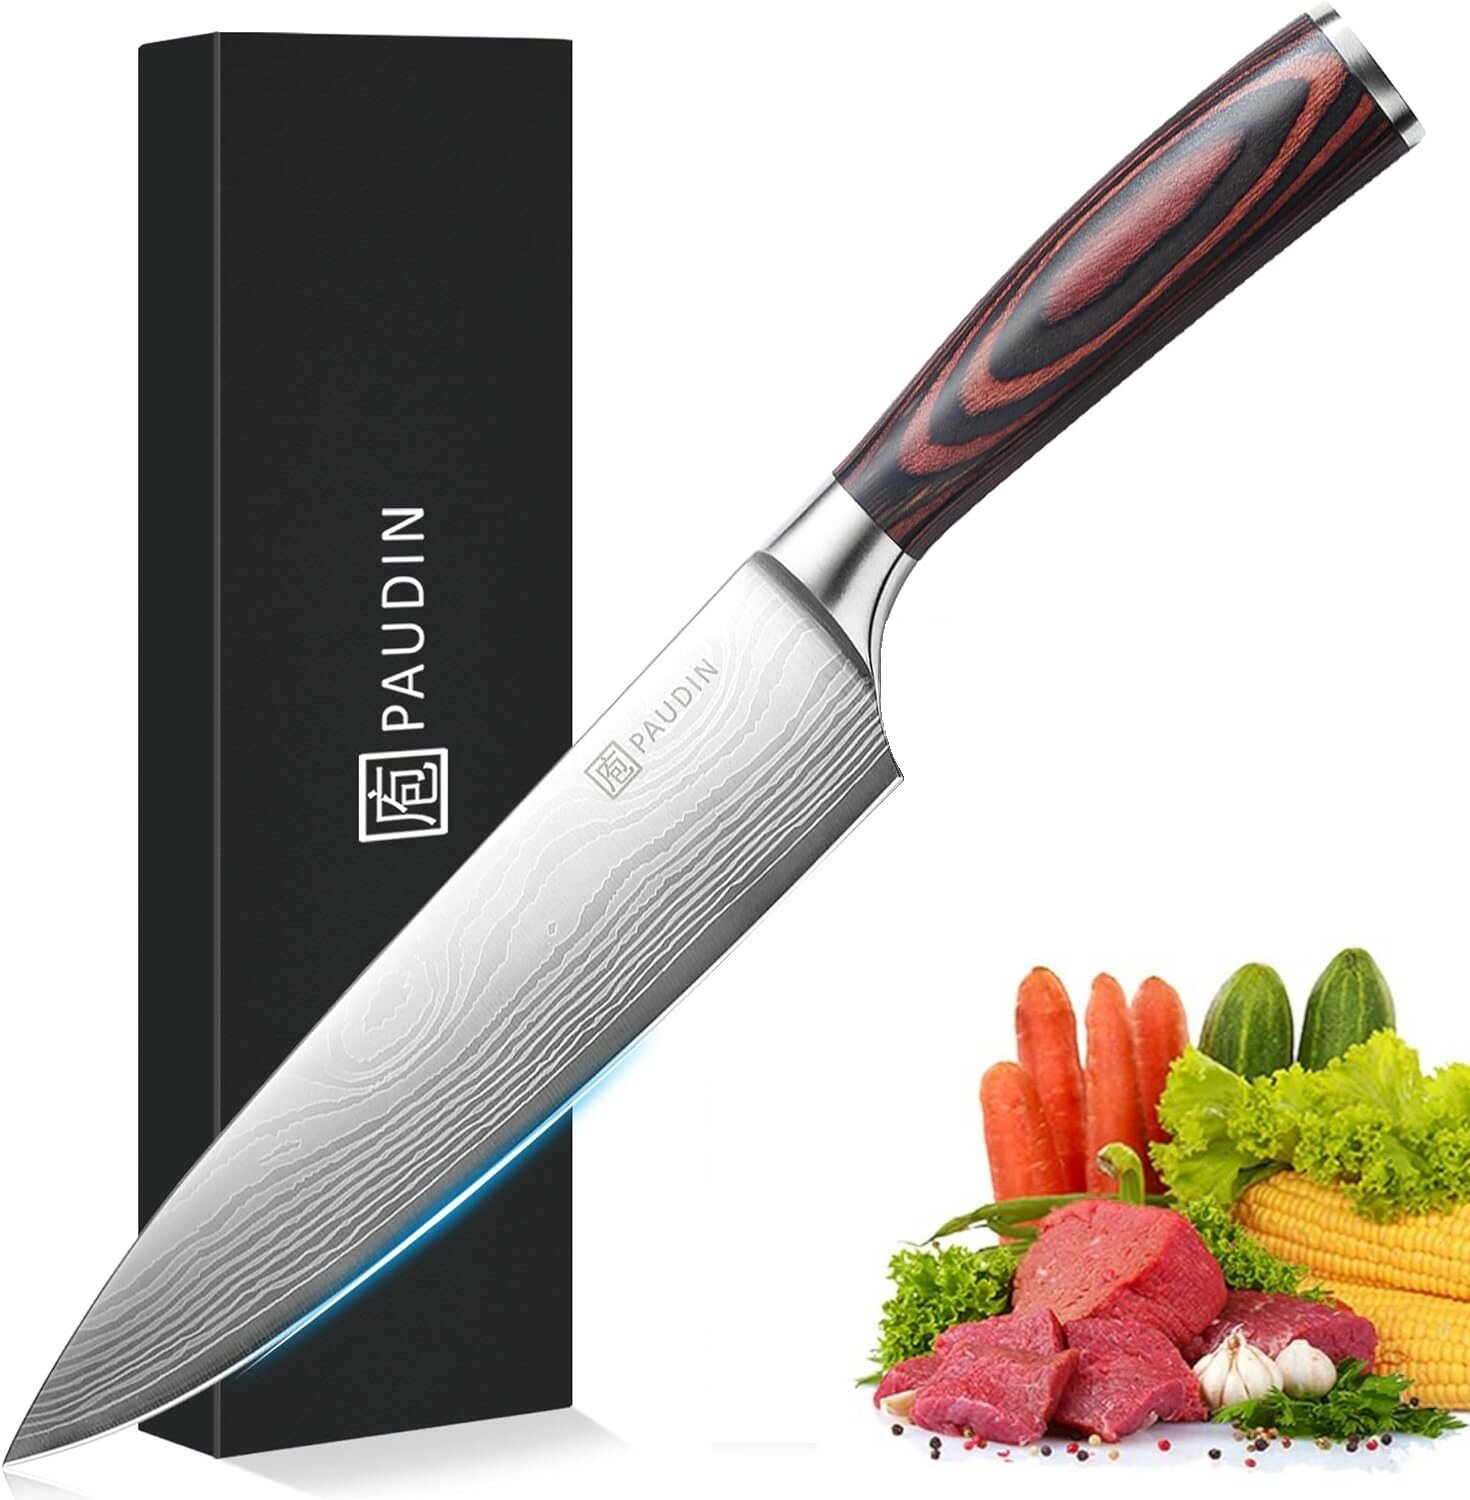 PAUDIN Pro Нож кухонный профессиональный шеф-повара разделочный 20 см с балансировкой веса